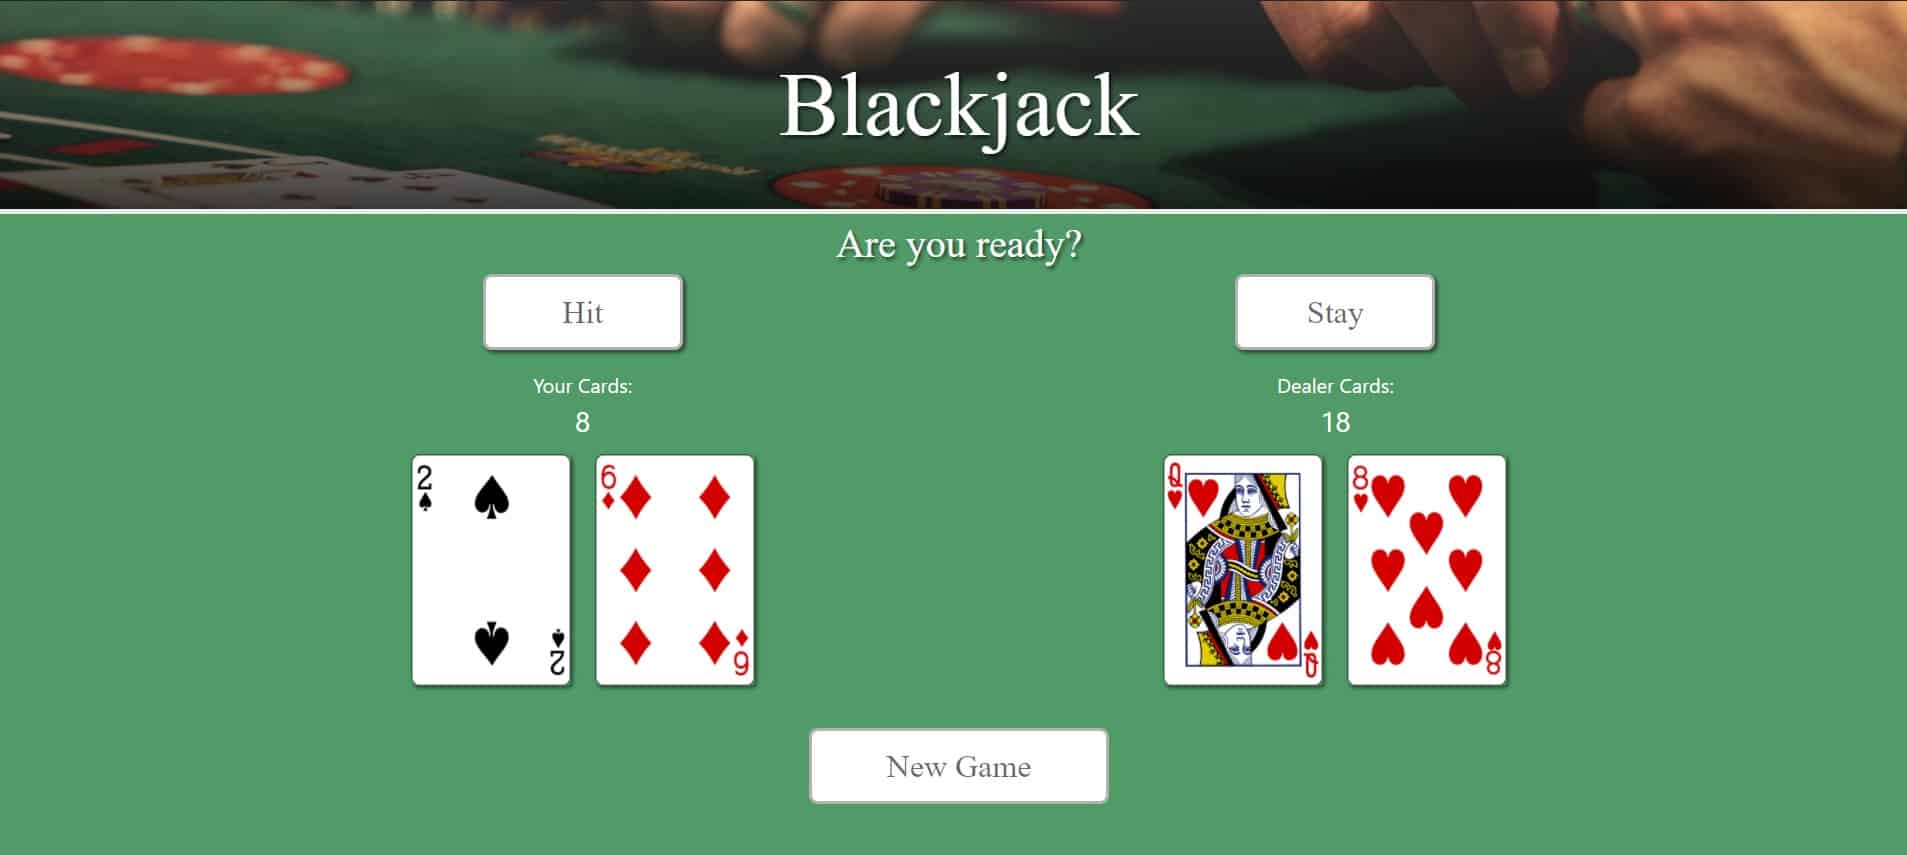 Những ưu điểm mà trò chơi Blackjack mang lại cho người chơi